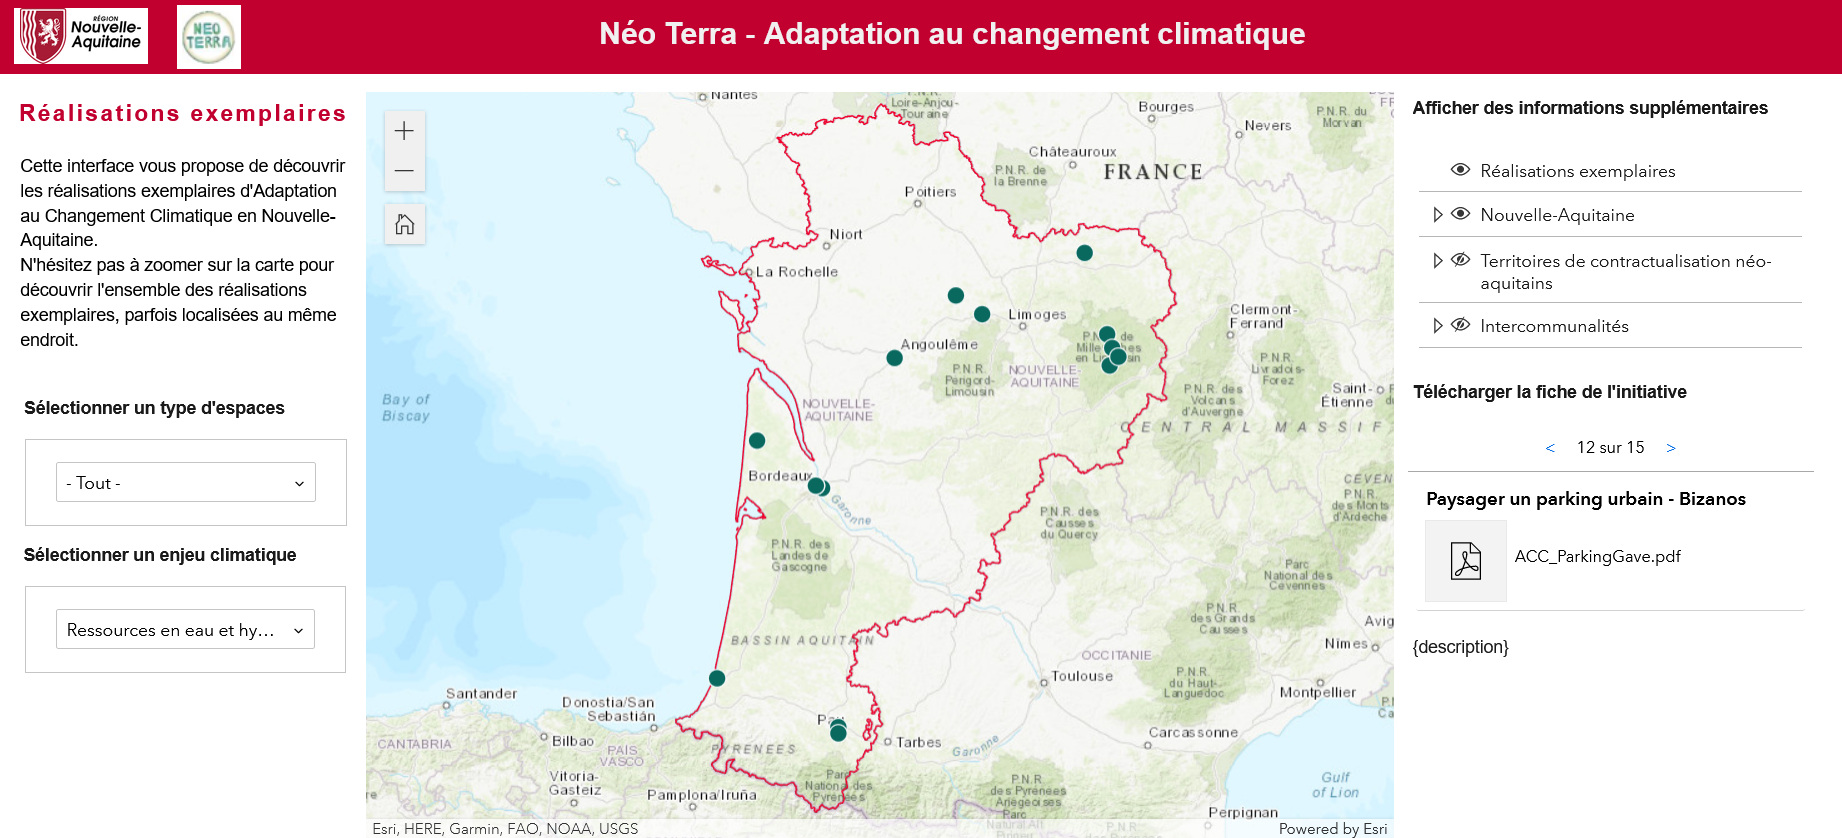 Outil de cartographie des opérations d'adaptation Néo Terra